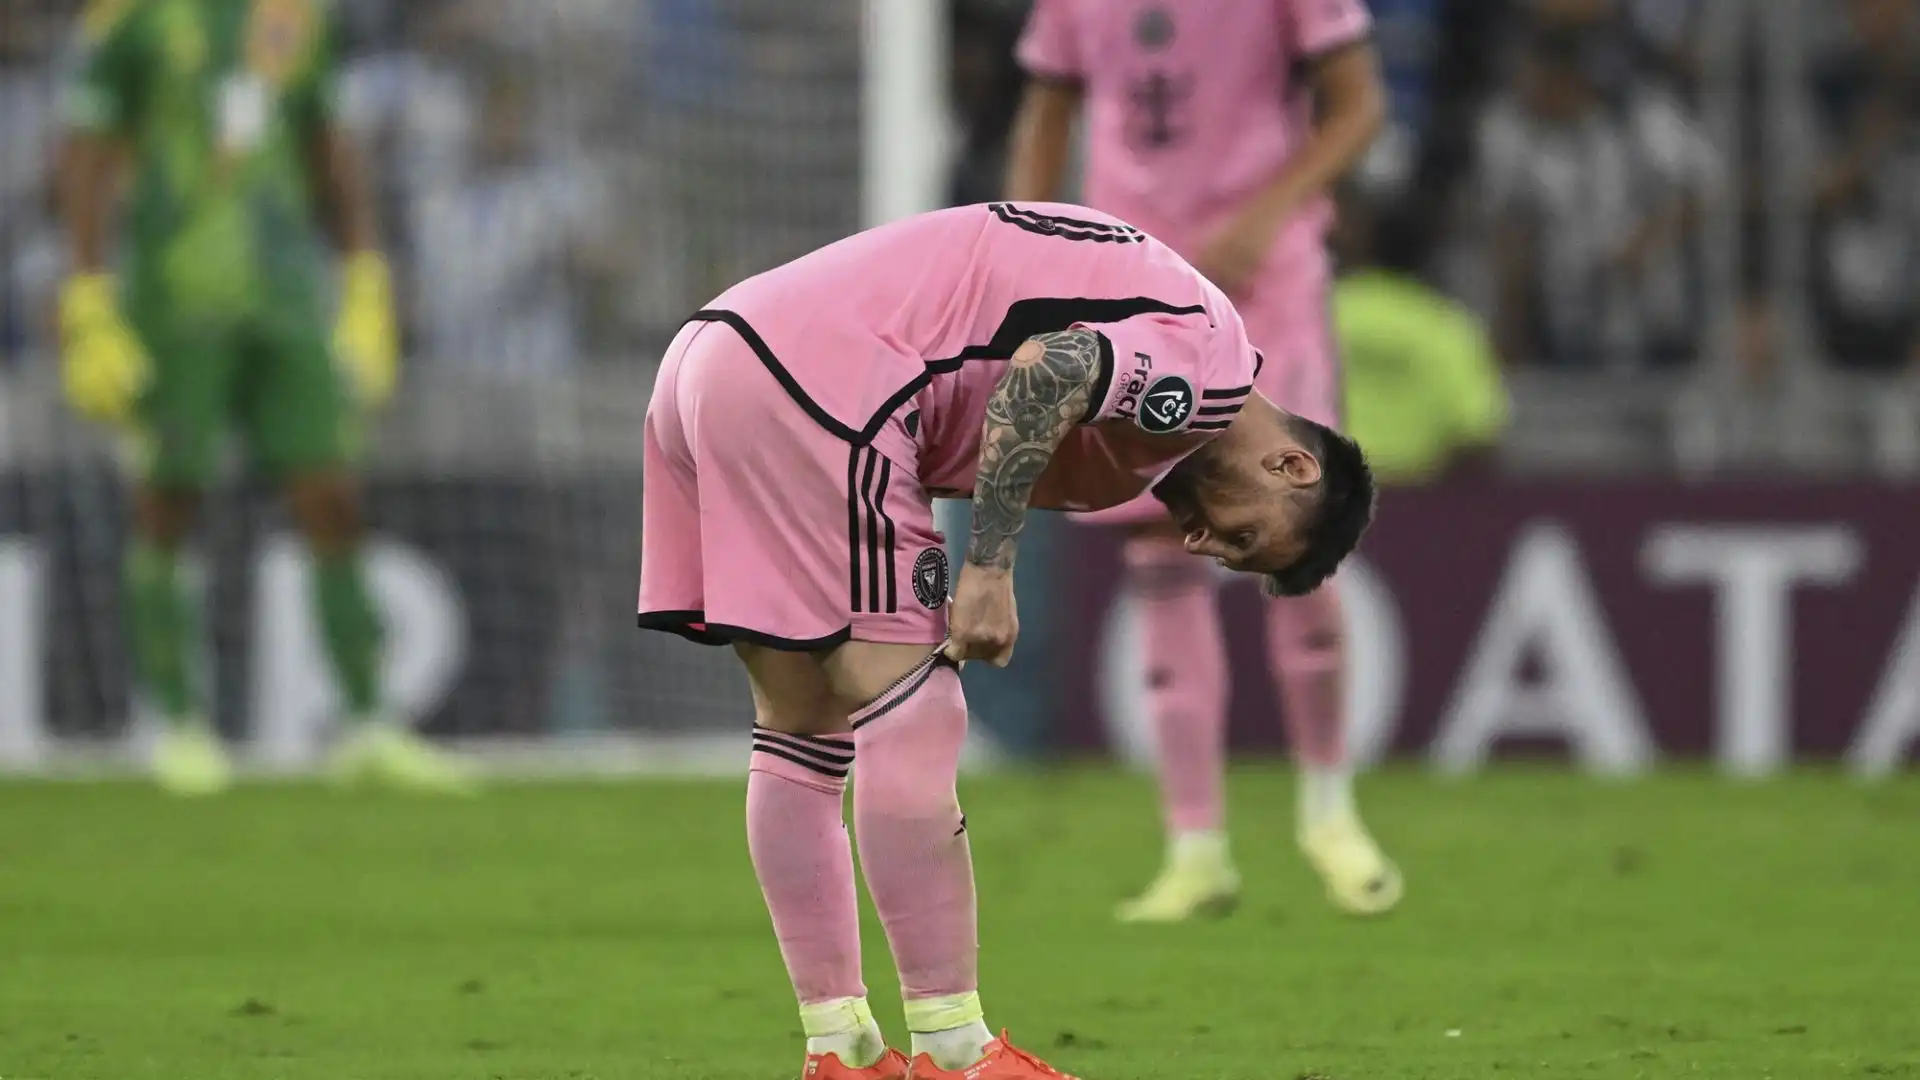 L'attaccante argentino è sembrato molto deluso al termine del match